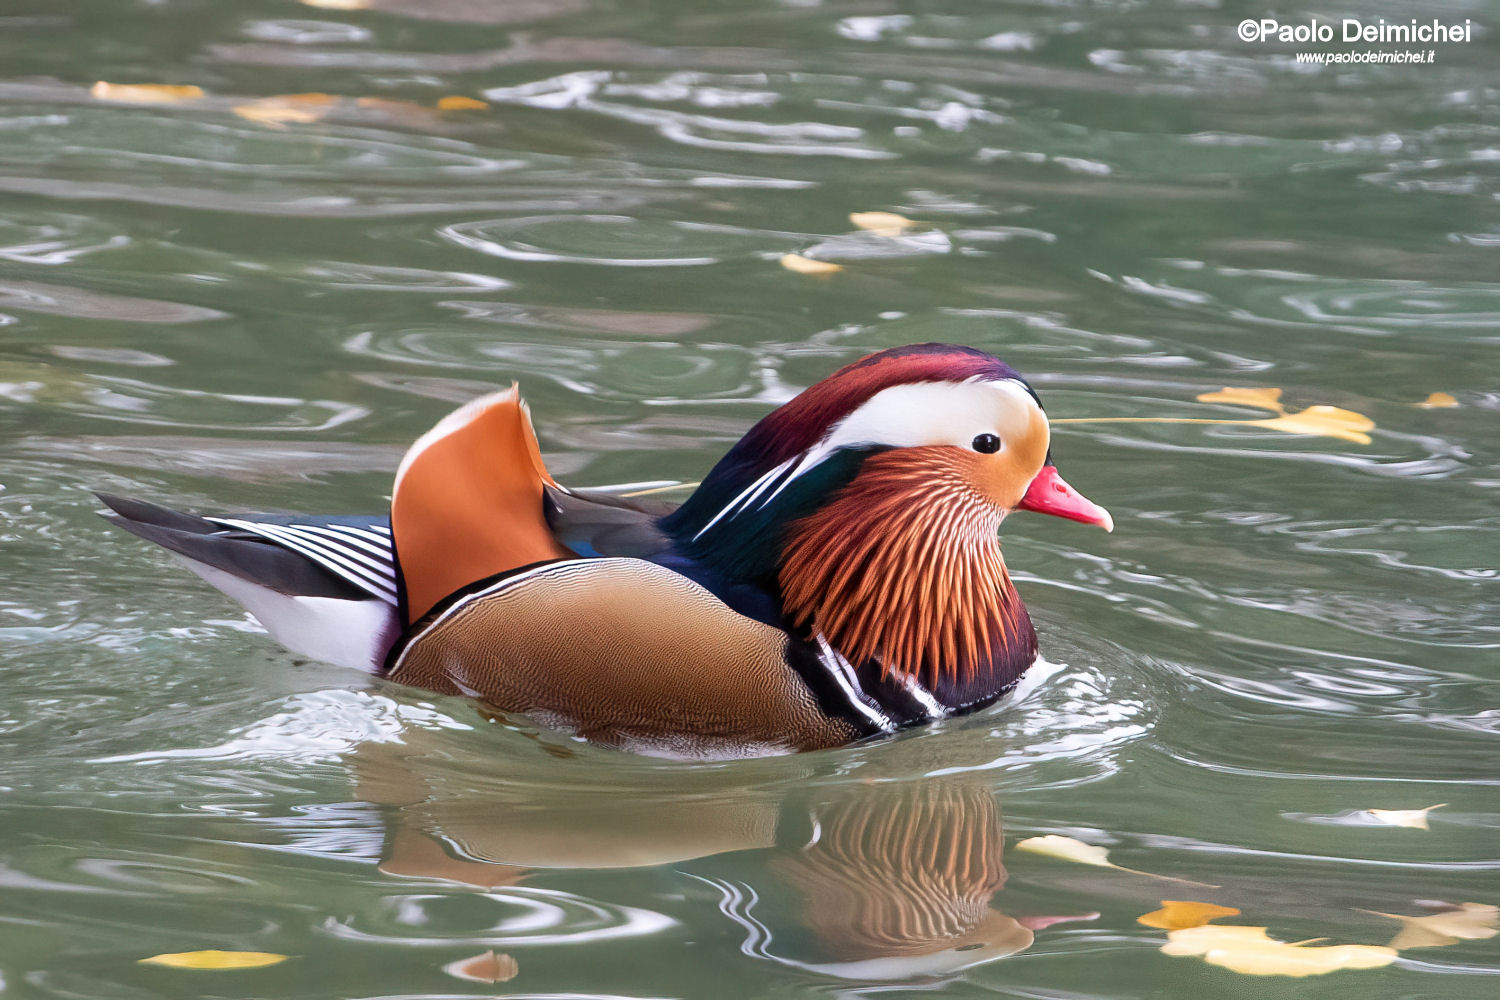 The colorful Mandarin Duck in Rovereto (Trentino)...